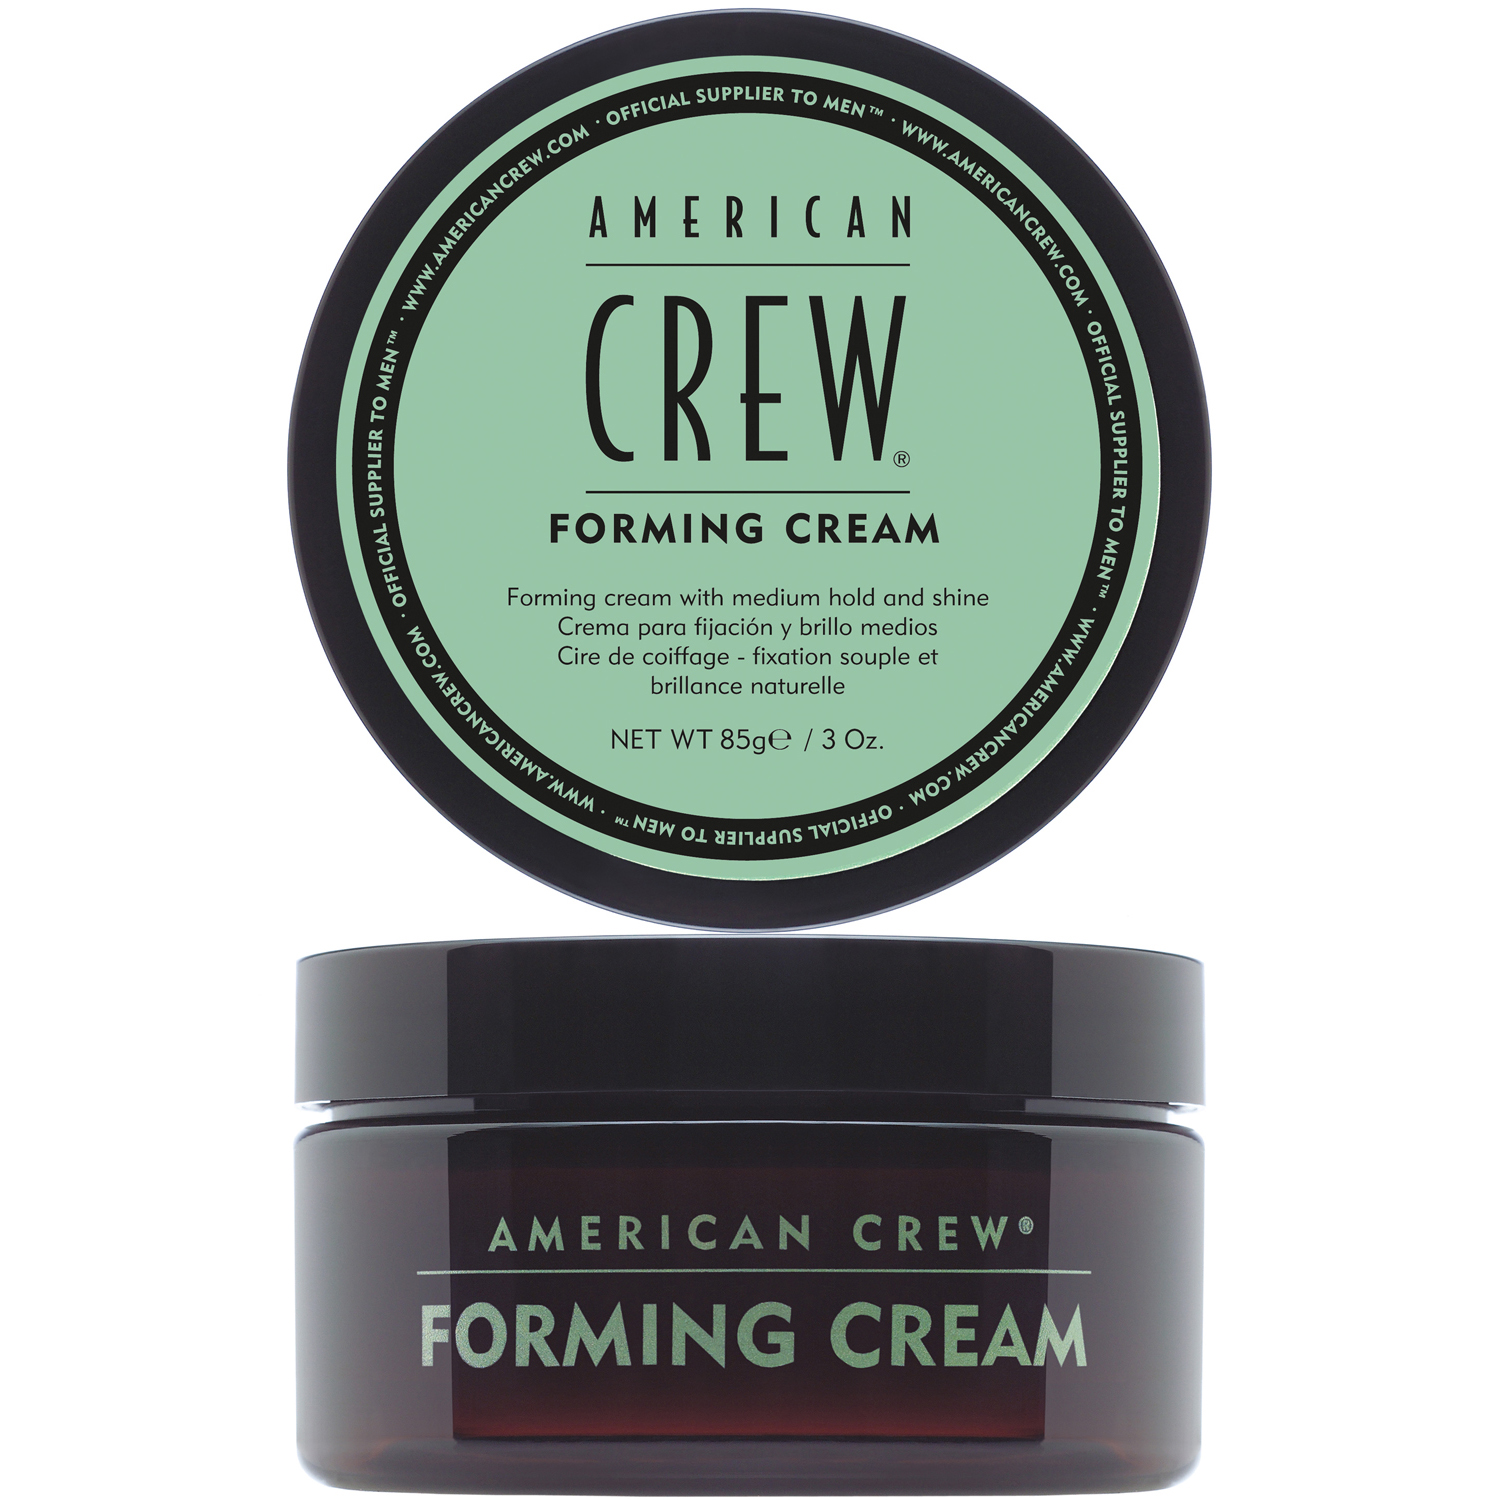 American Crew Средство для укладки средней фиксации со средним уровнем блеска Forming Cream, 85 мл (American Crew, Styling) крем со средней фиксацией для укладки волос forming cream american crew 85 г